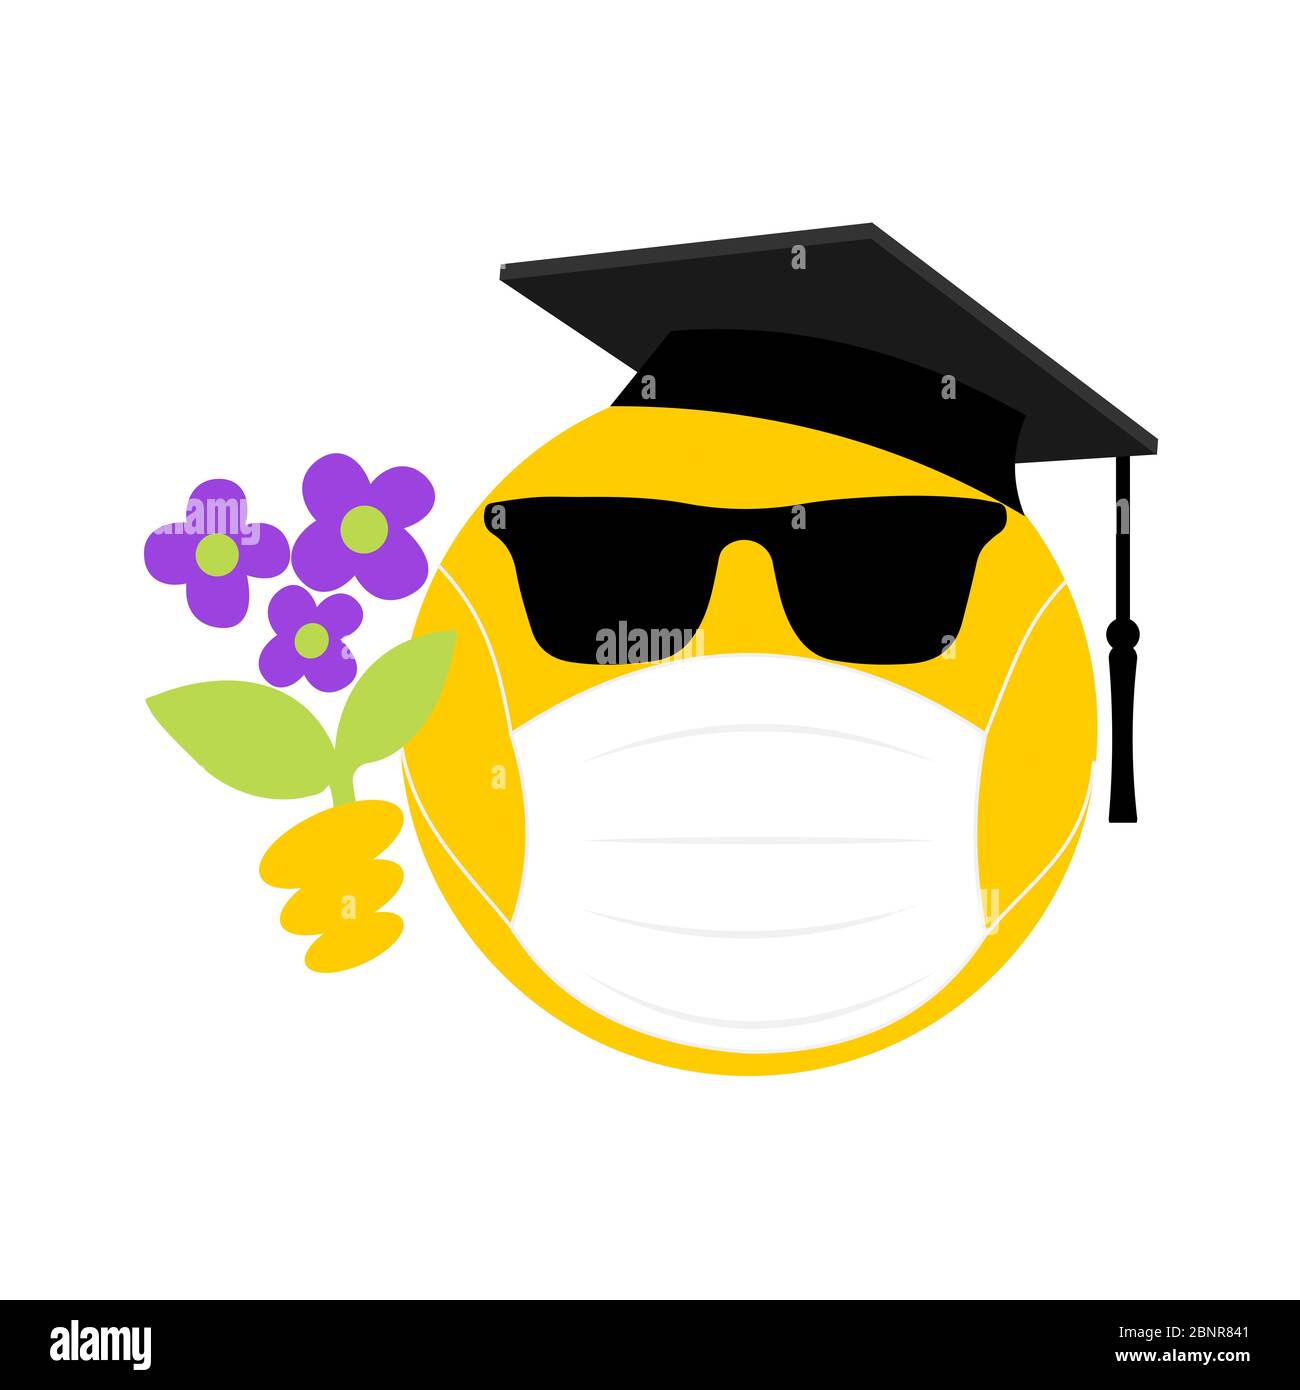 Coole Graduation Emoji mit Sonnenbrille, Gesichtsmaske und Blumen. Coronavirus, Covid 19, soziale Distanzierung, Emoji. Jugendkonzept des Coronavirus. Stockfoto